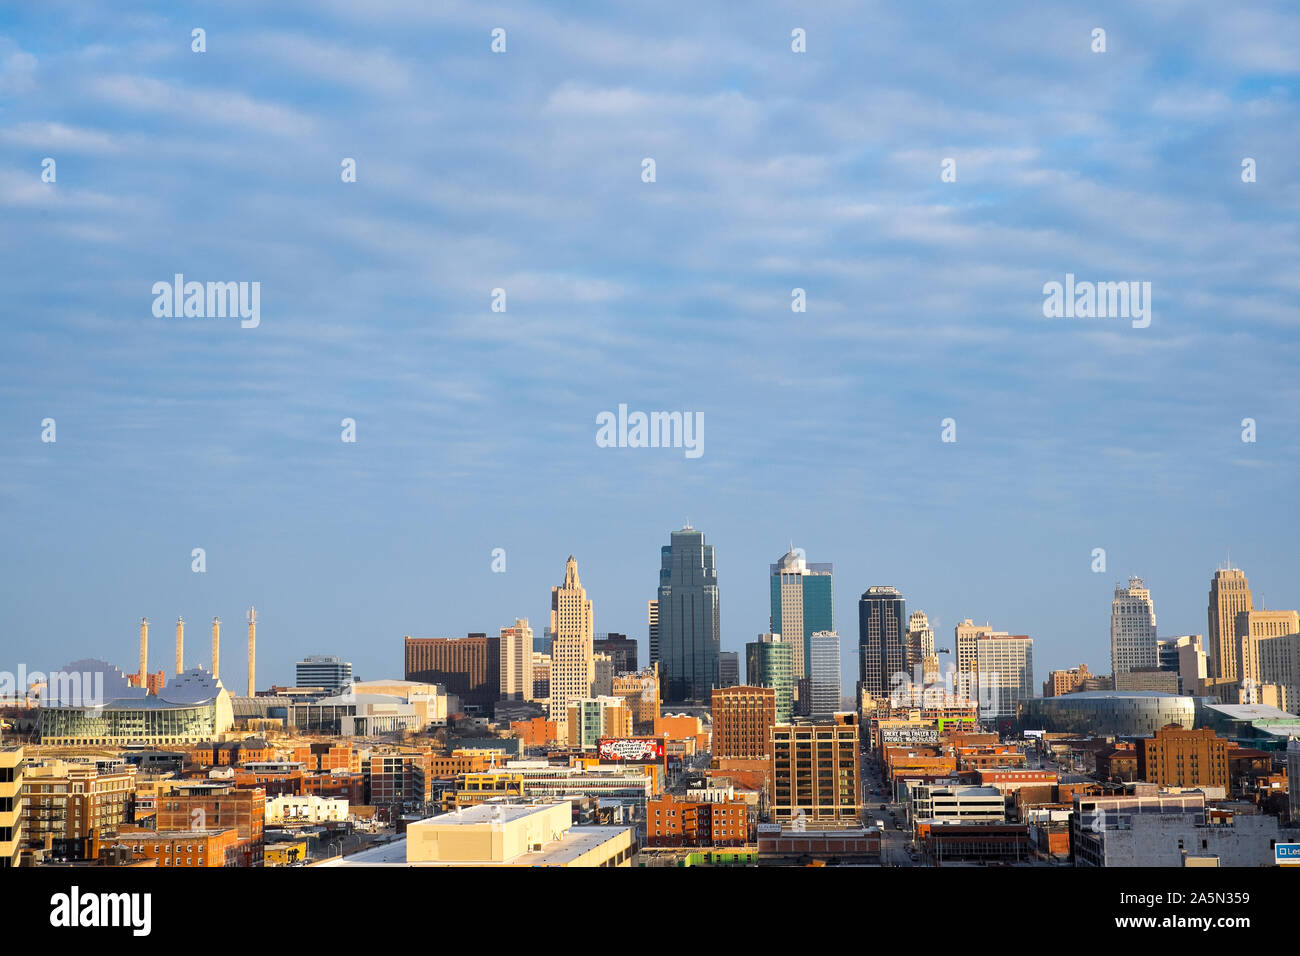 Au-dessus de la prairie du Midwest, The Kansas City skyline accentue cette métropole en croissance. Banque D'Images